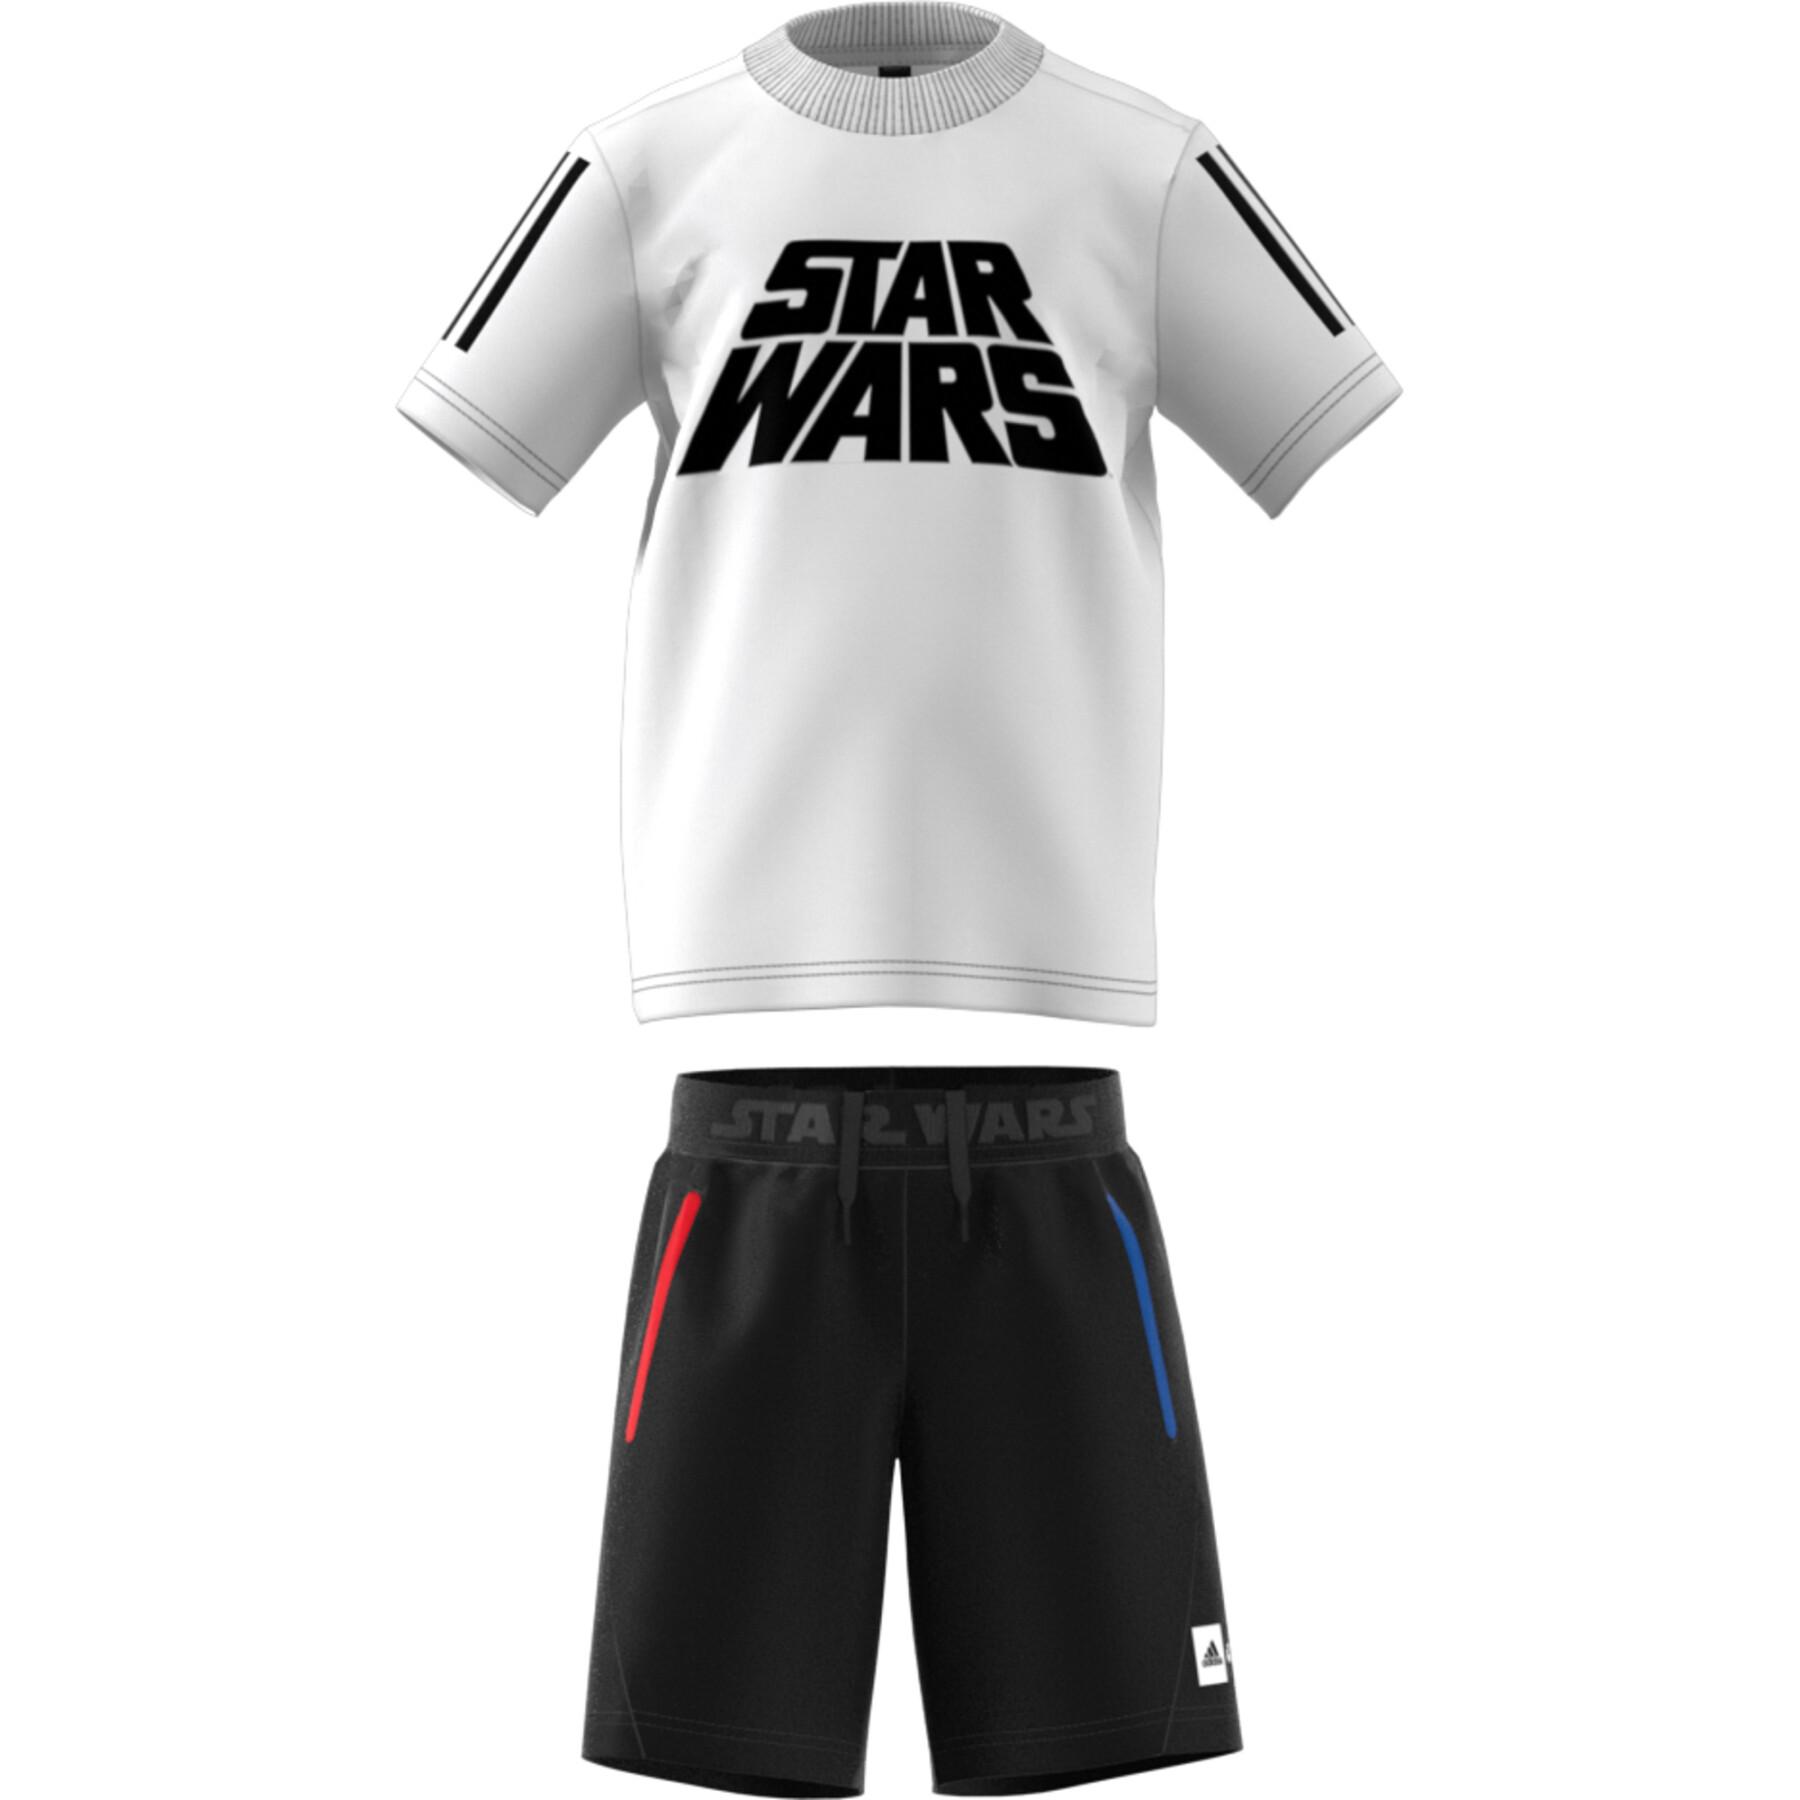 Mini-kit adidas Star Wars Summer